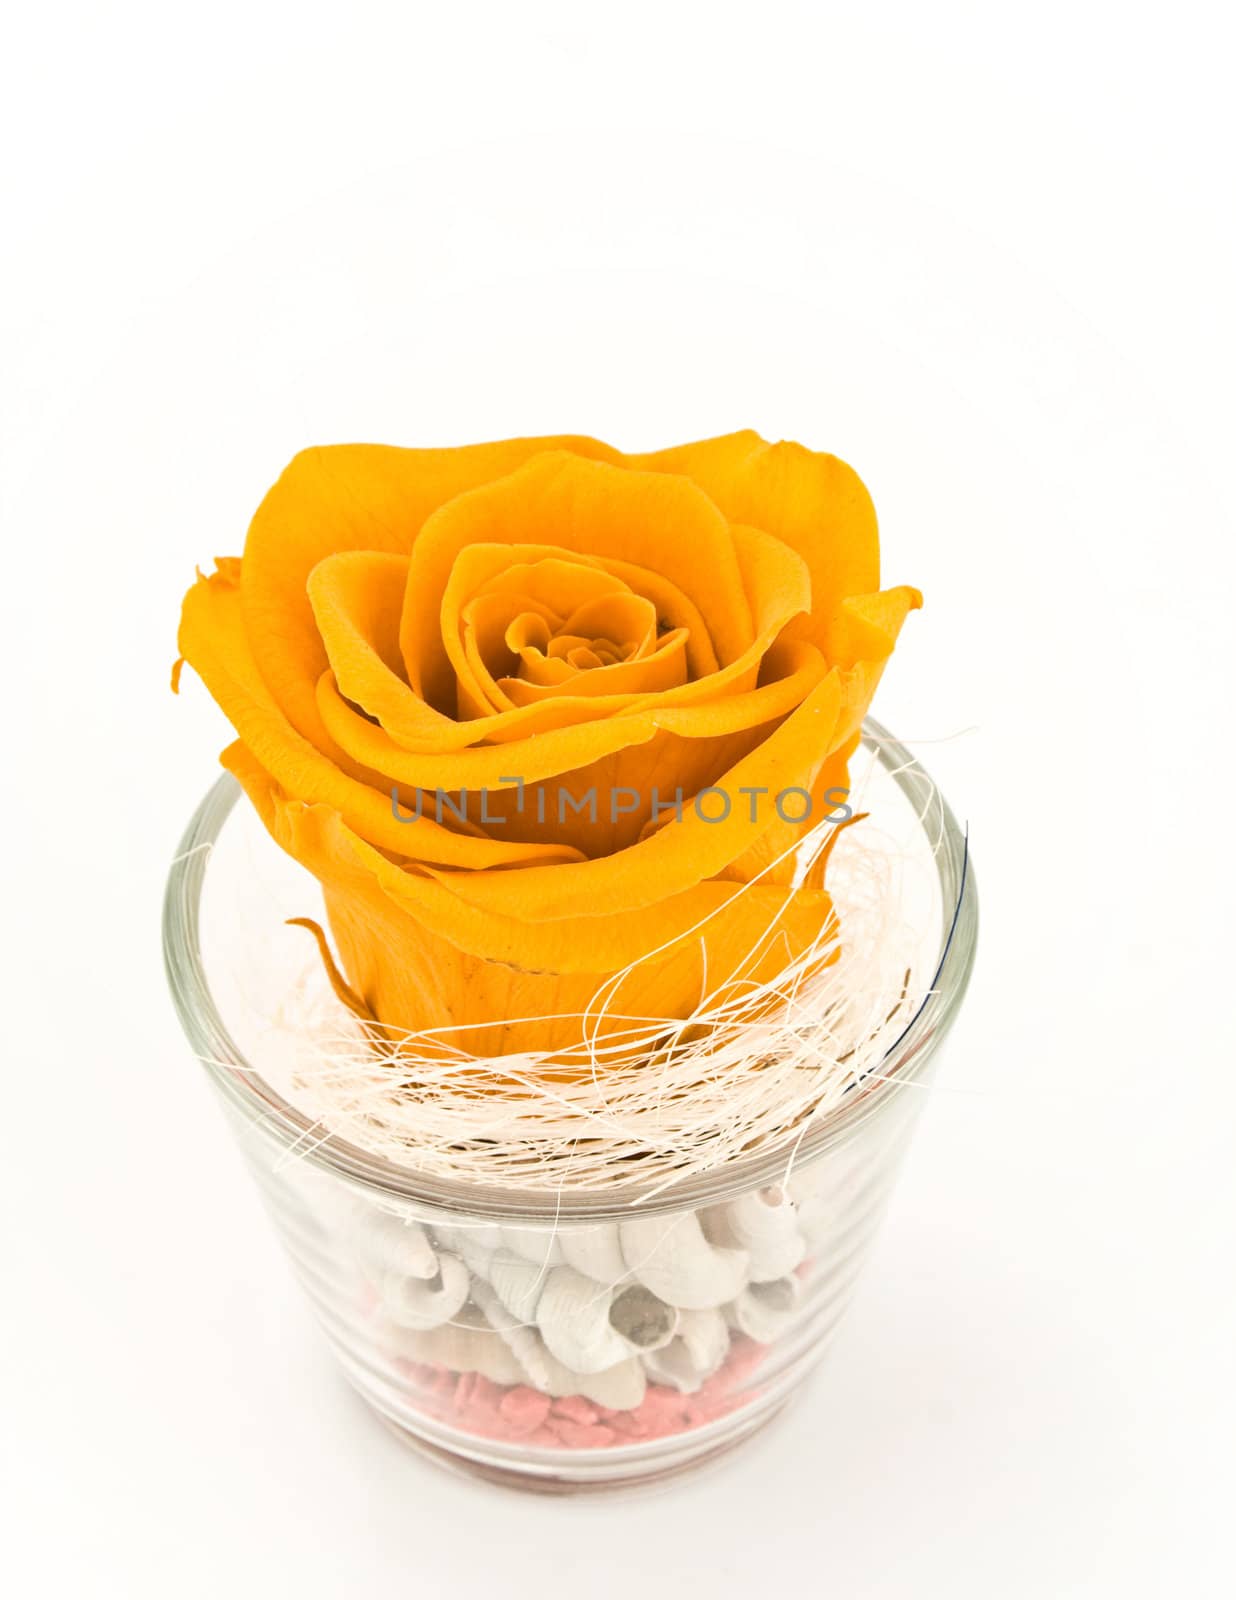 Orange rose in glass.